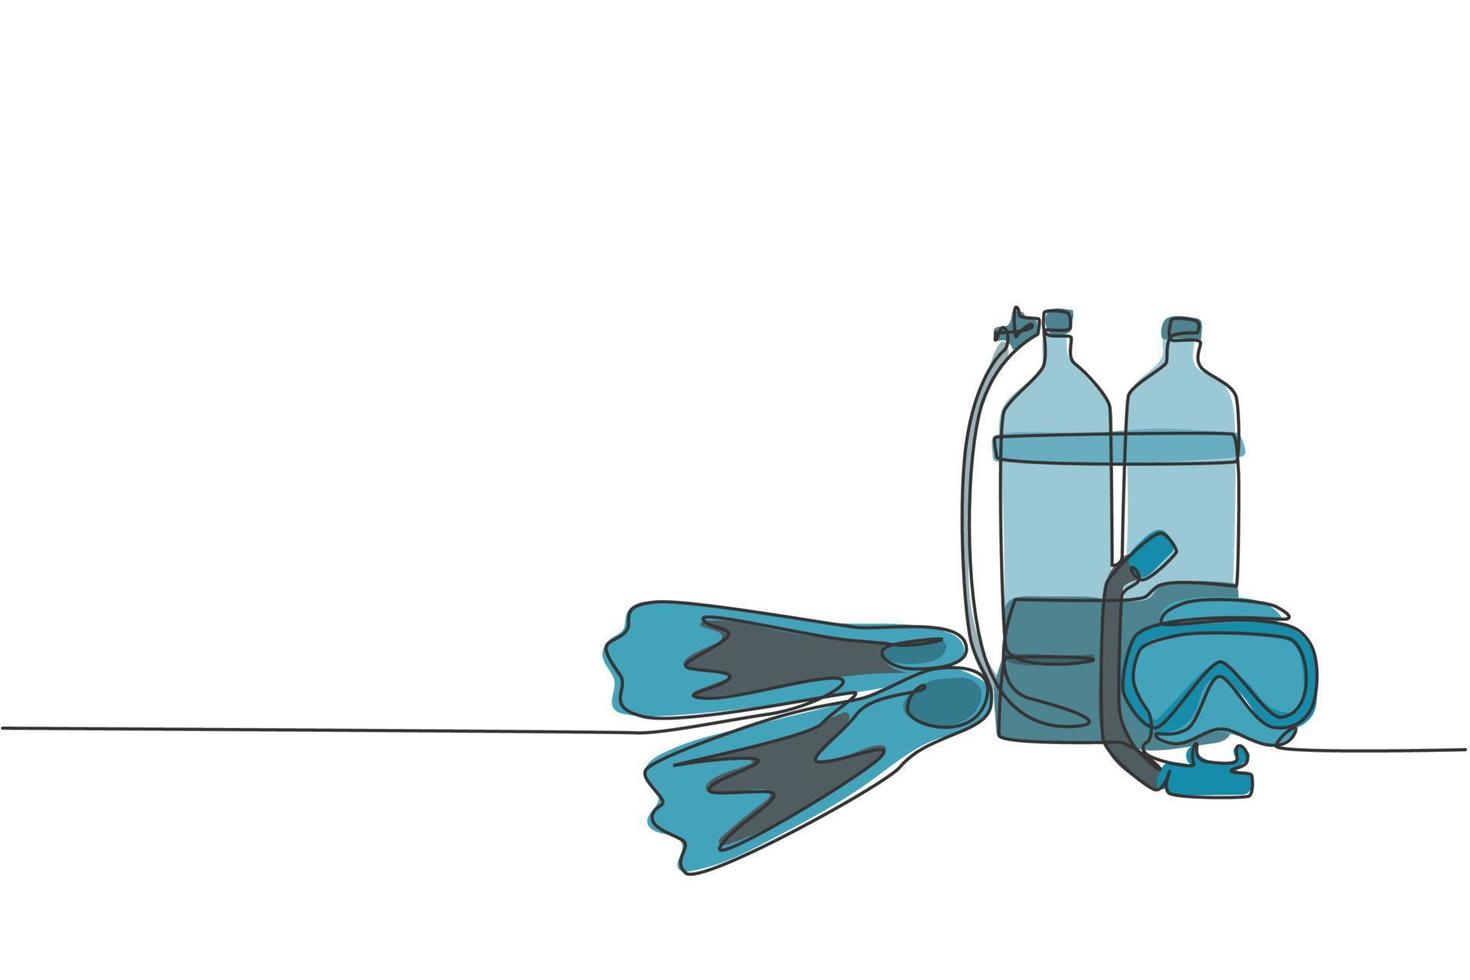 Neoprenanzug, Badeanzug, Atemregler, Sauerstoff, Maske, Schnorchelbrille und Flossen in einer fortlaufenden Strichzeichnung. Konzept der Wassersport-Tauchausrüstung. dynamische einzeilige zeichnen design vektorgrafik illustration vektor